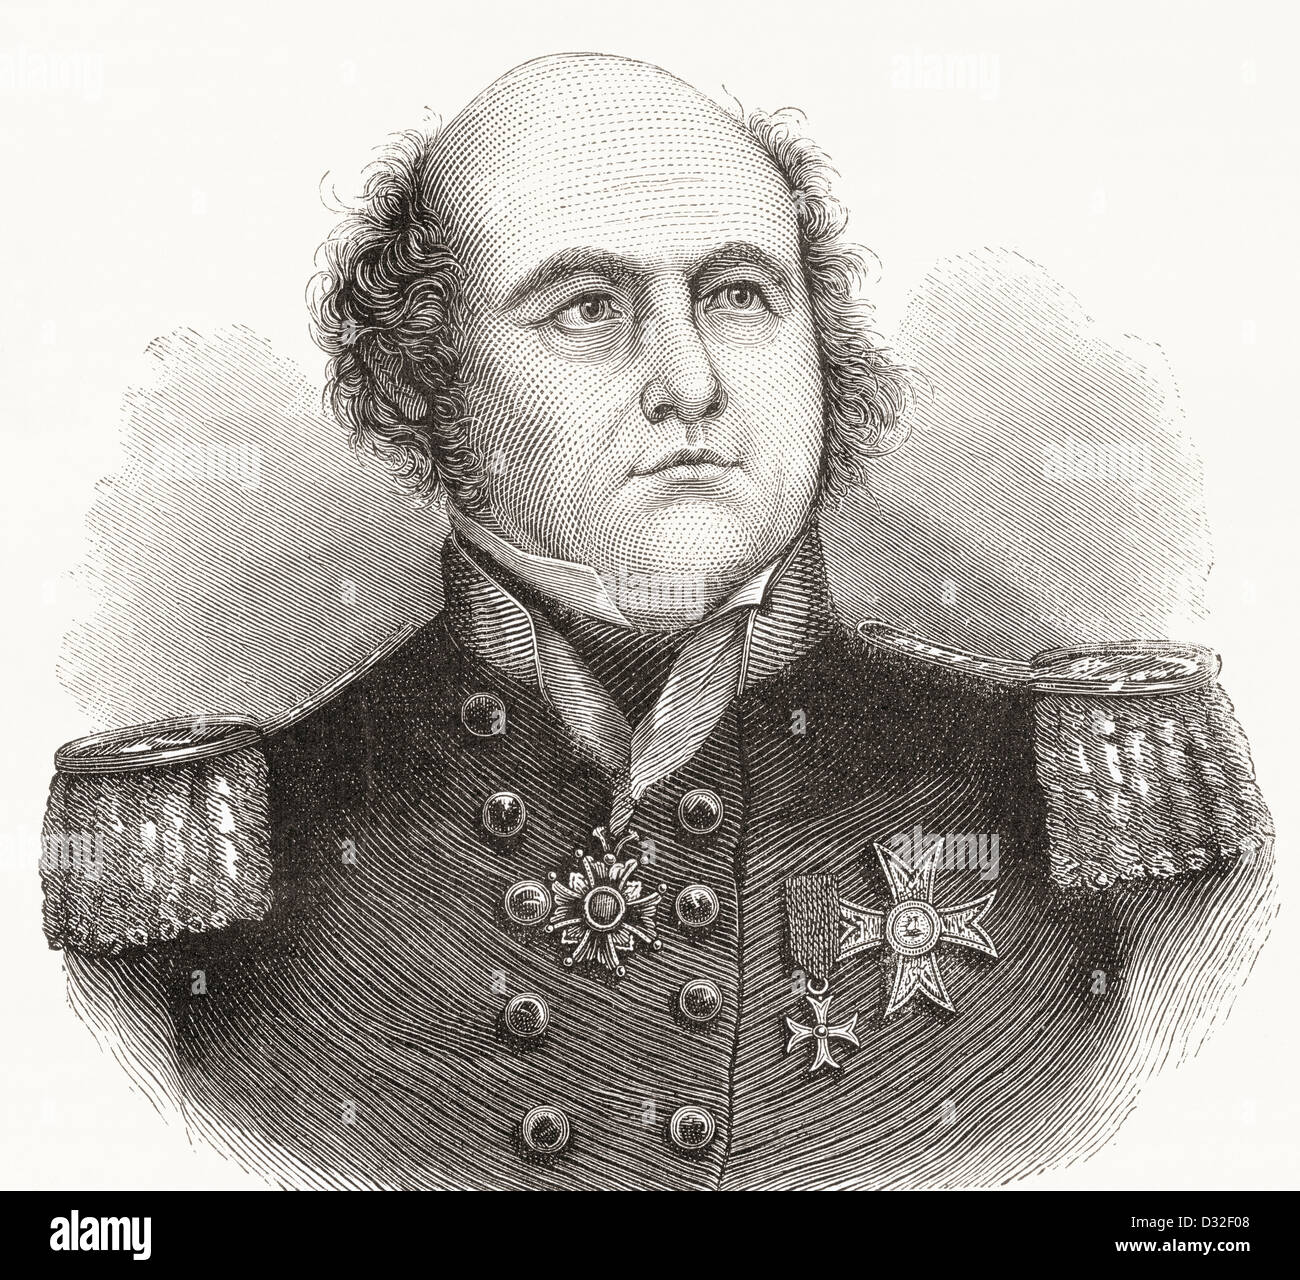 Konteradmiral Sir John Franklin, 1786 –1847. Britische königliche Marine Offizier, Polarforscher, Gouverneur von Van Diemen's Land (Tasmanien) Stockfoto